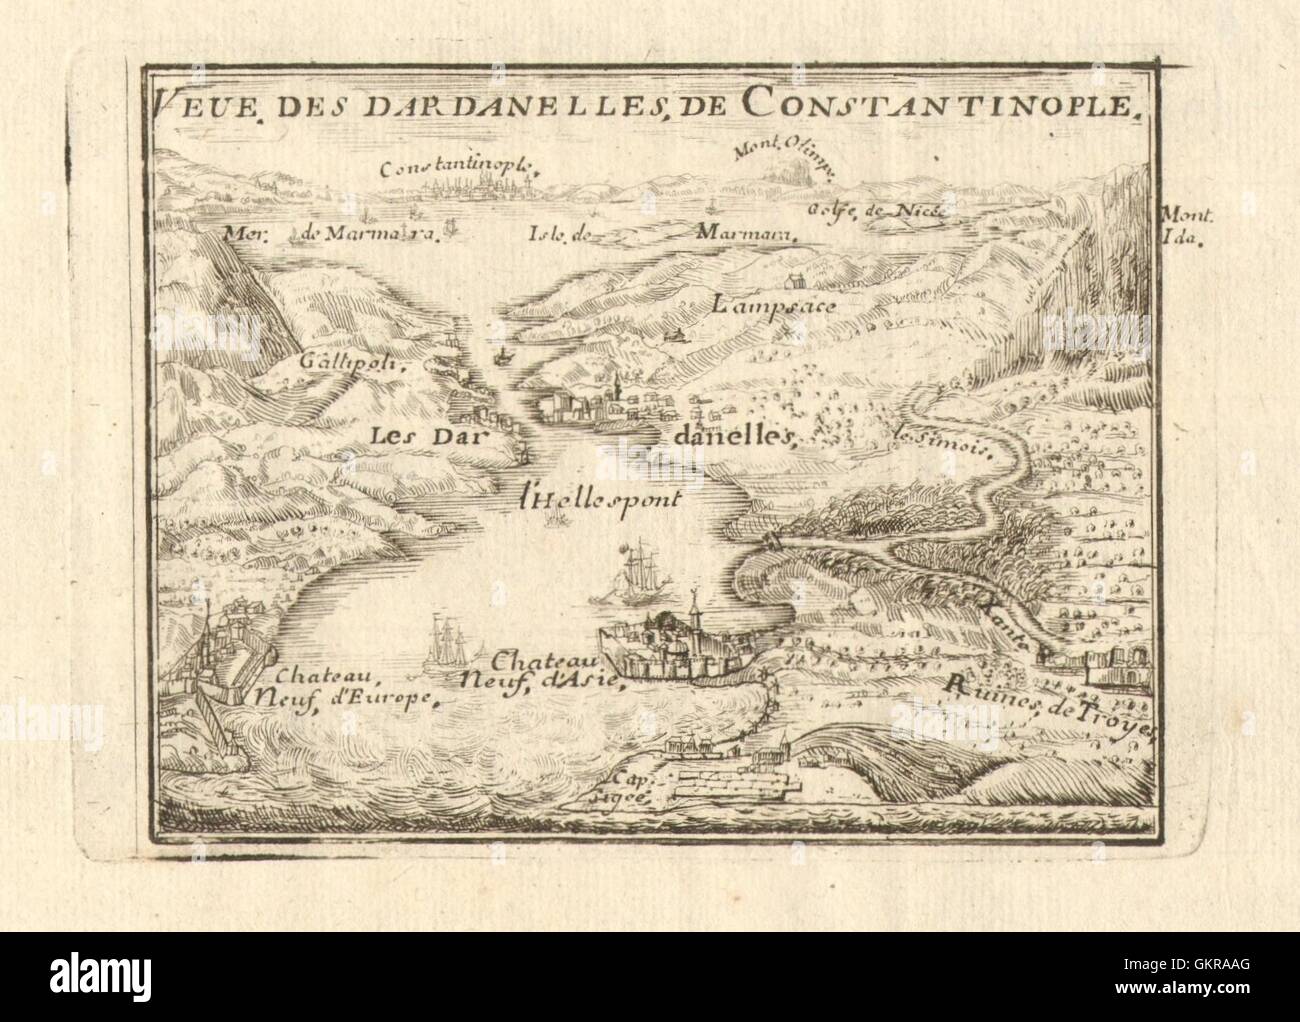 "Veue des Dardanelles de Constantinople". Istanbul Troja Türkei. DE FER, 1705 Karte Stockfoto